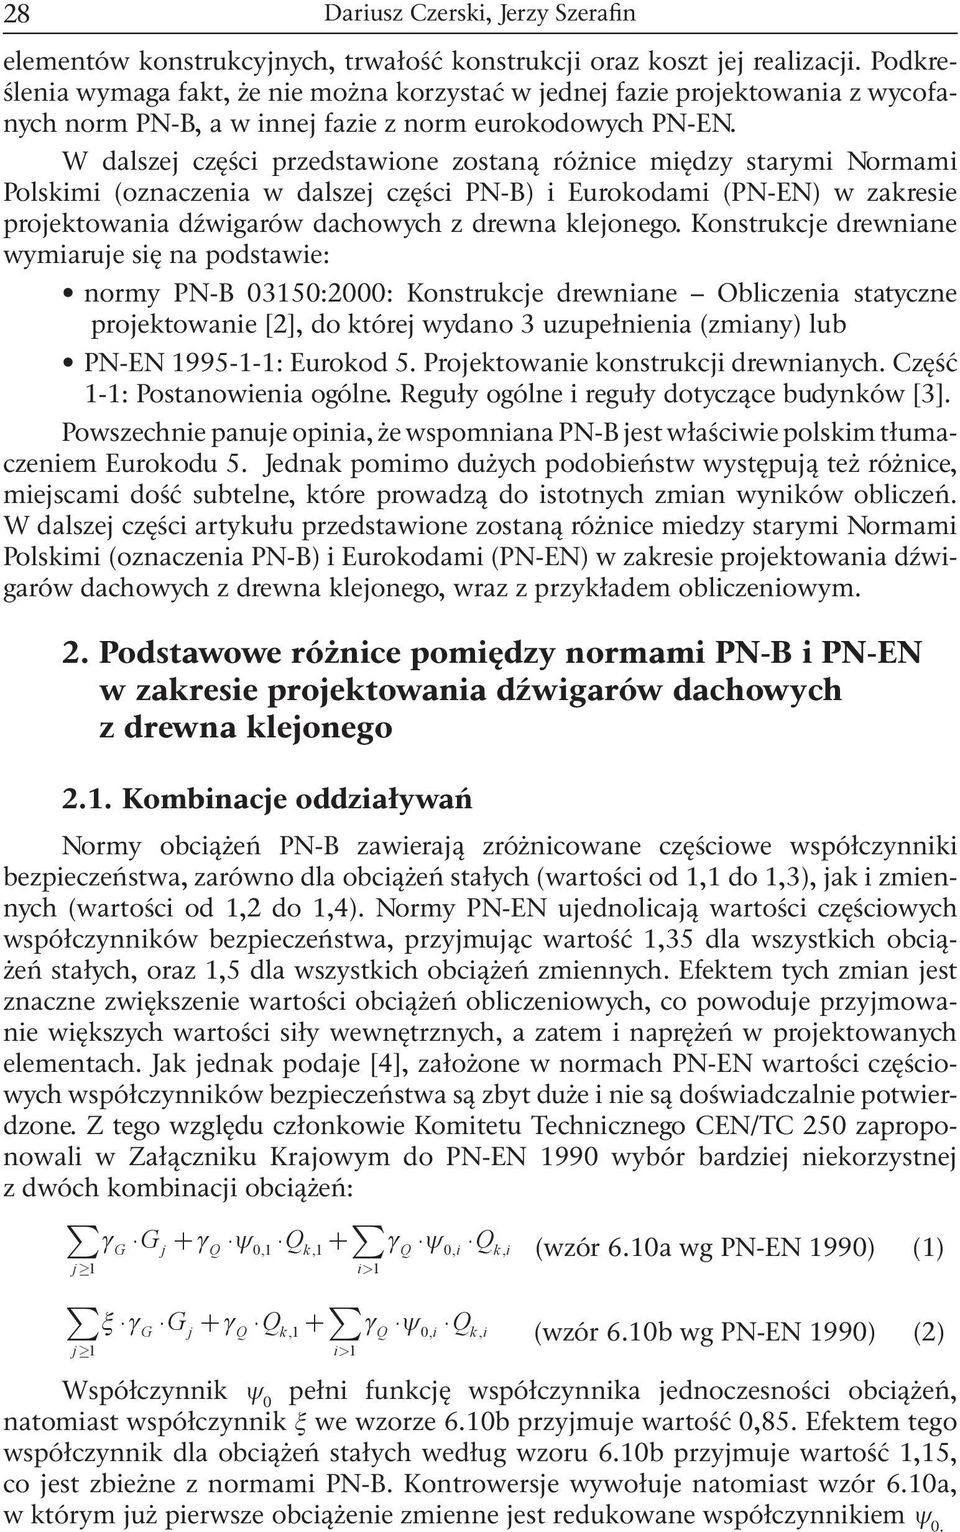 W alszej części przestawione zostaną różnice mięzy starymi Normami Polskimi (oznaczenia w alszej części PN-B) i Eurokoami (PN-EN) w zakresie projektowania źwigarów achowych z rewna klejonego.